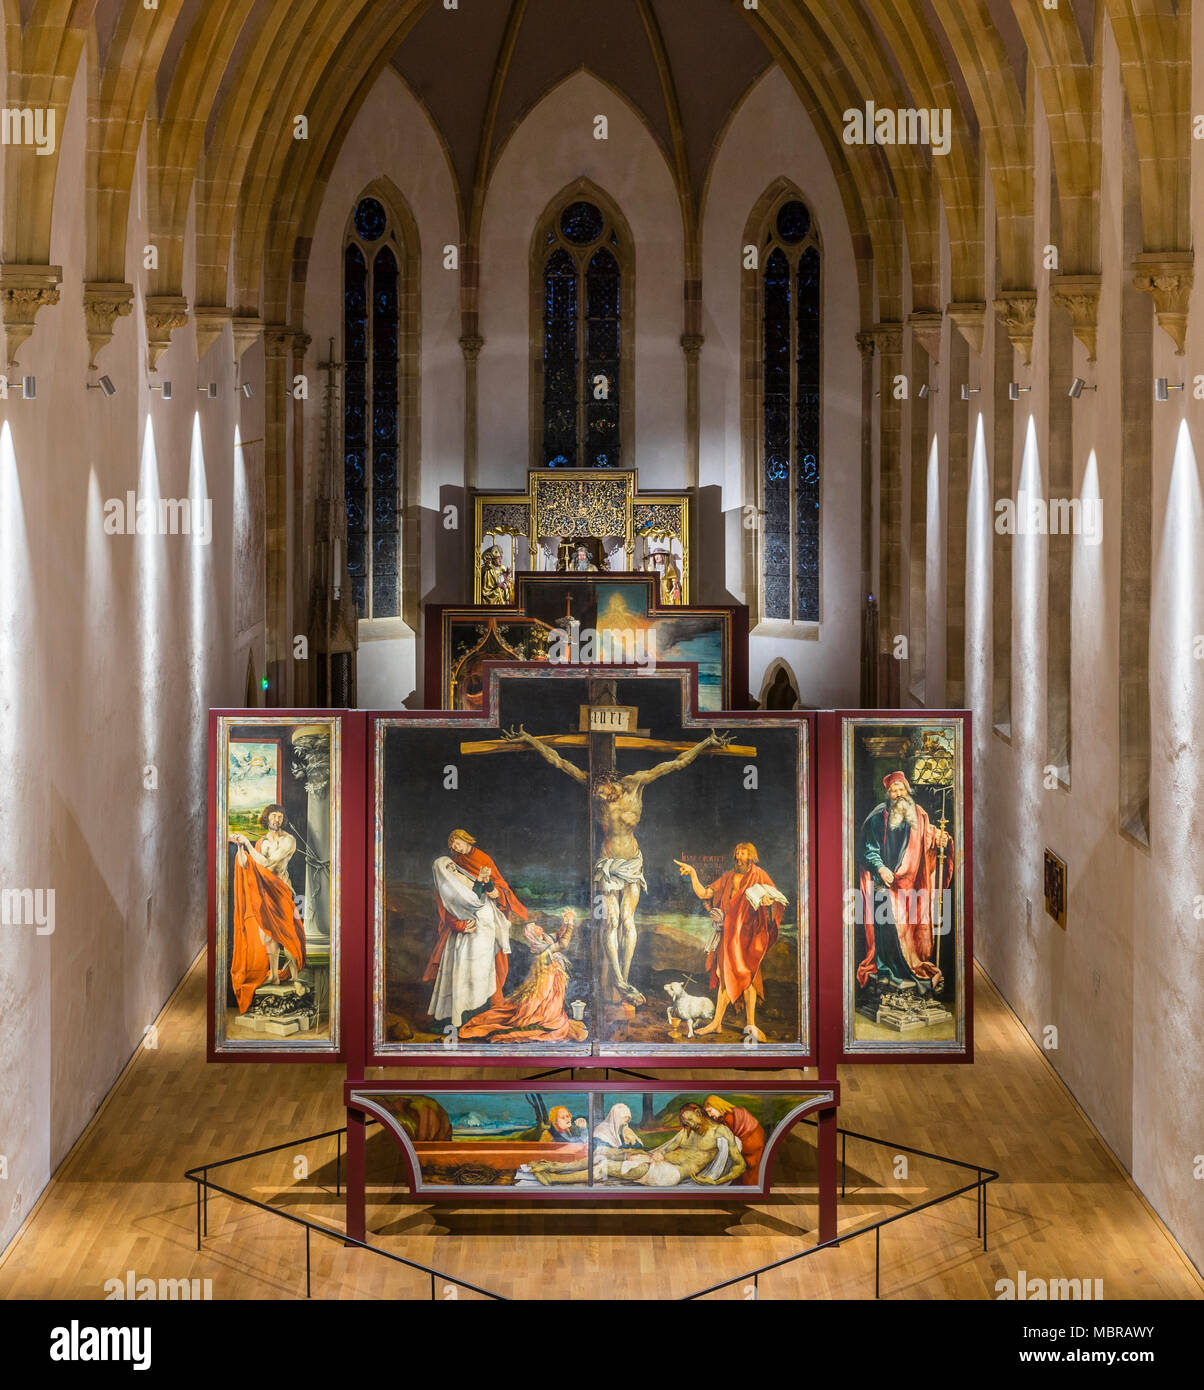 Isenheim Altar by Matthias Grünewald, Museum Unterlinden, Musée Unterlinden, Colmar, Alsace, France Stock Photo